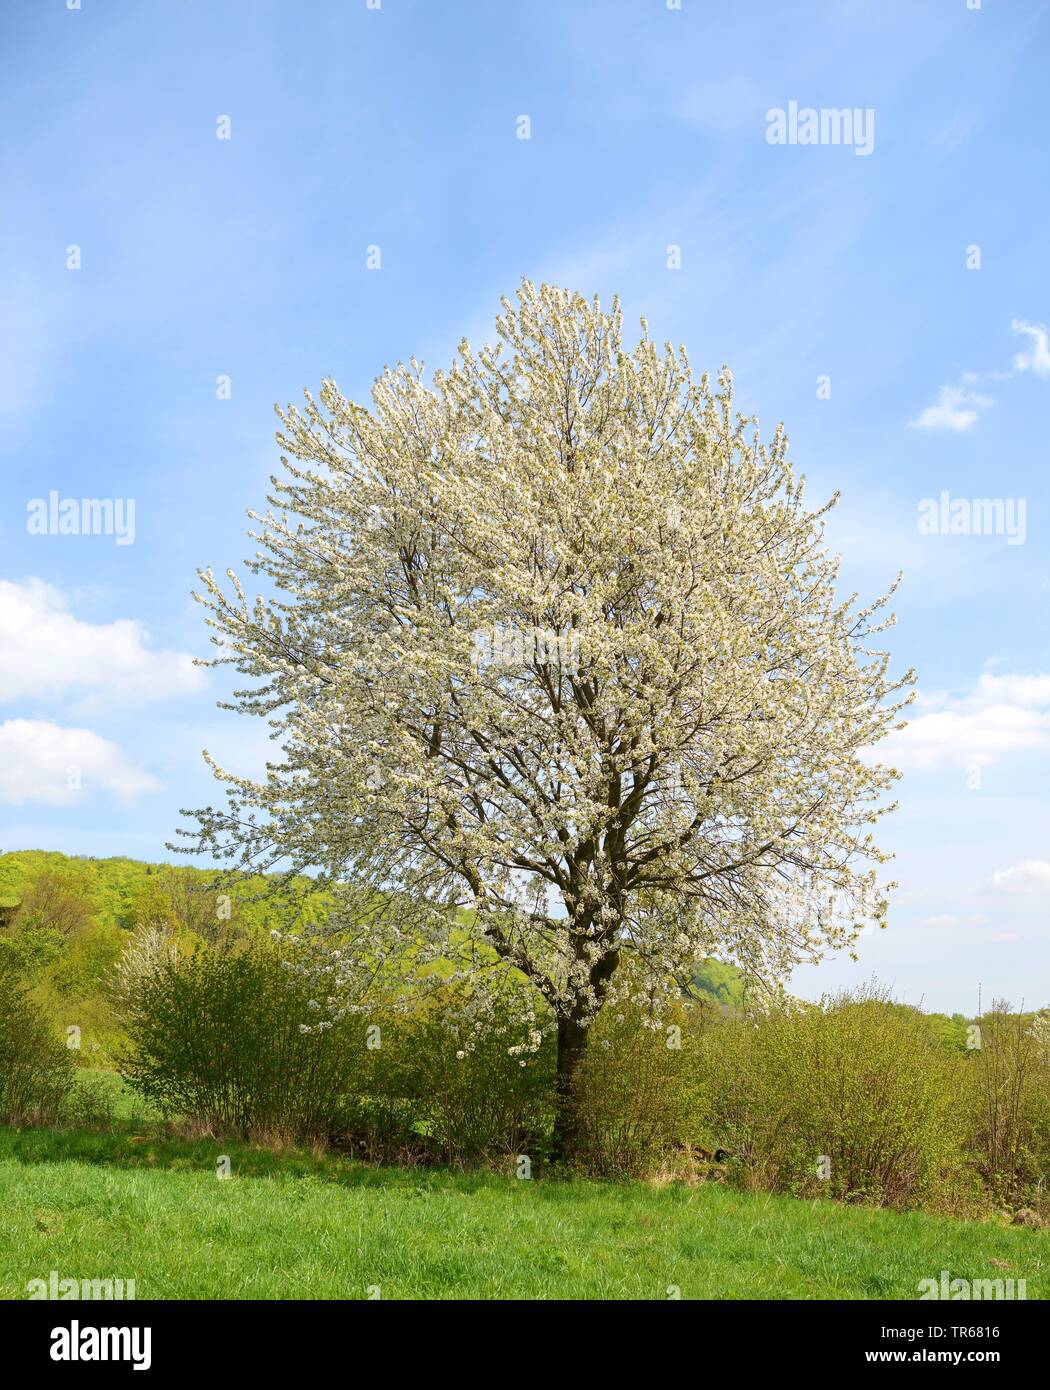 Cherry tree, Sweet cherry (Prunus avium), blooming cherry tree in a hedge, Germany, Bavaria Stock Photo